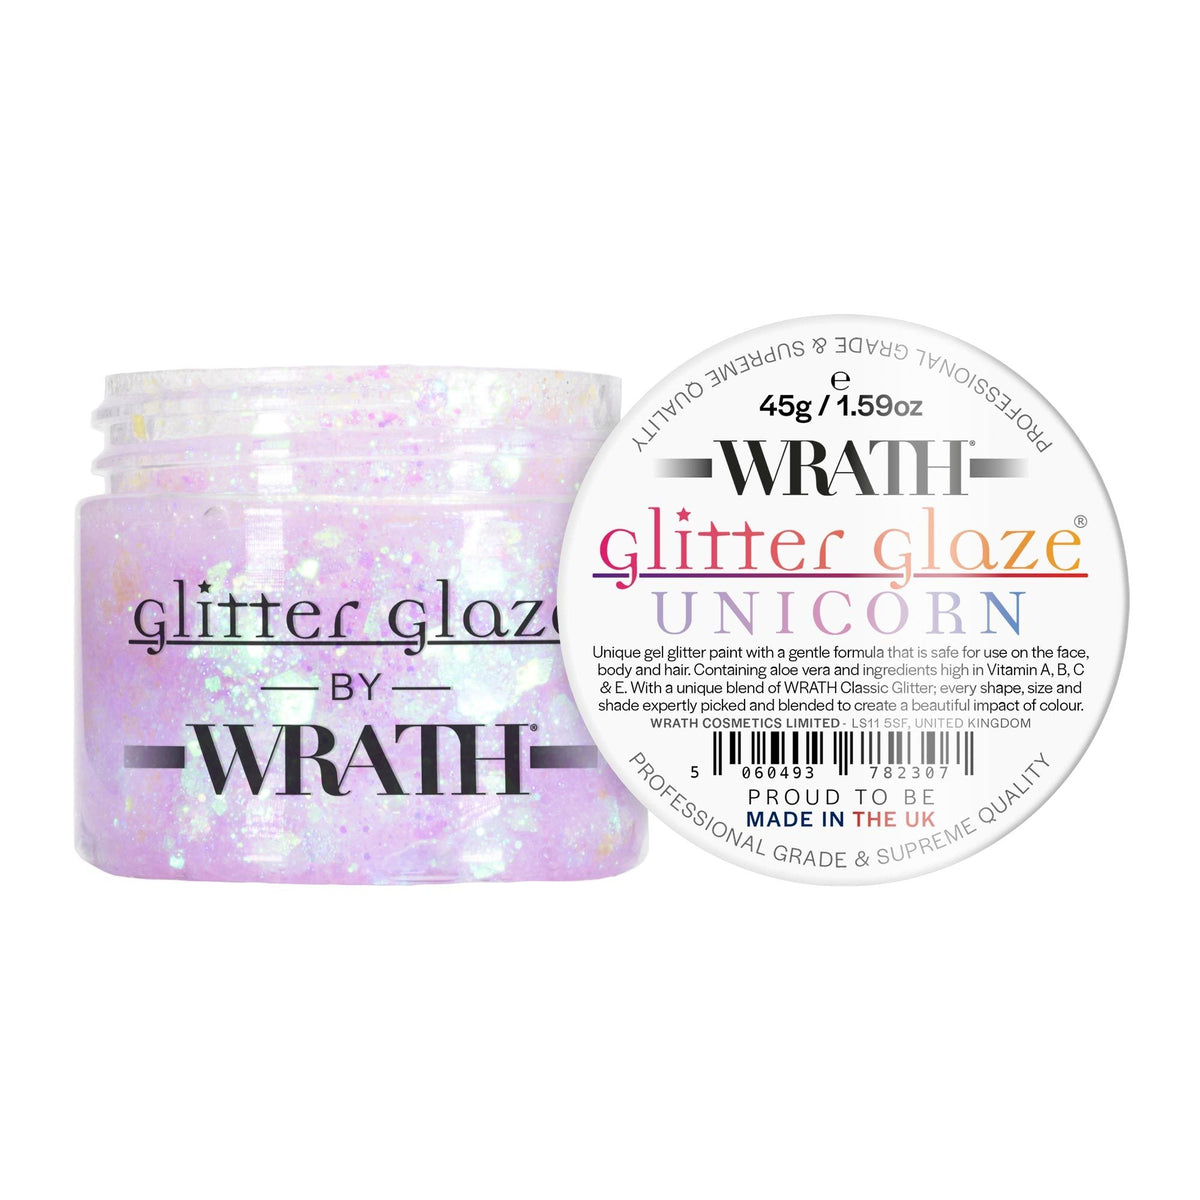 WRATH Glitter Glaze® - Glitter Gel Paint for Face, Body &amp; Hair